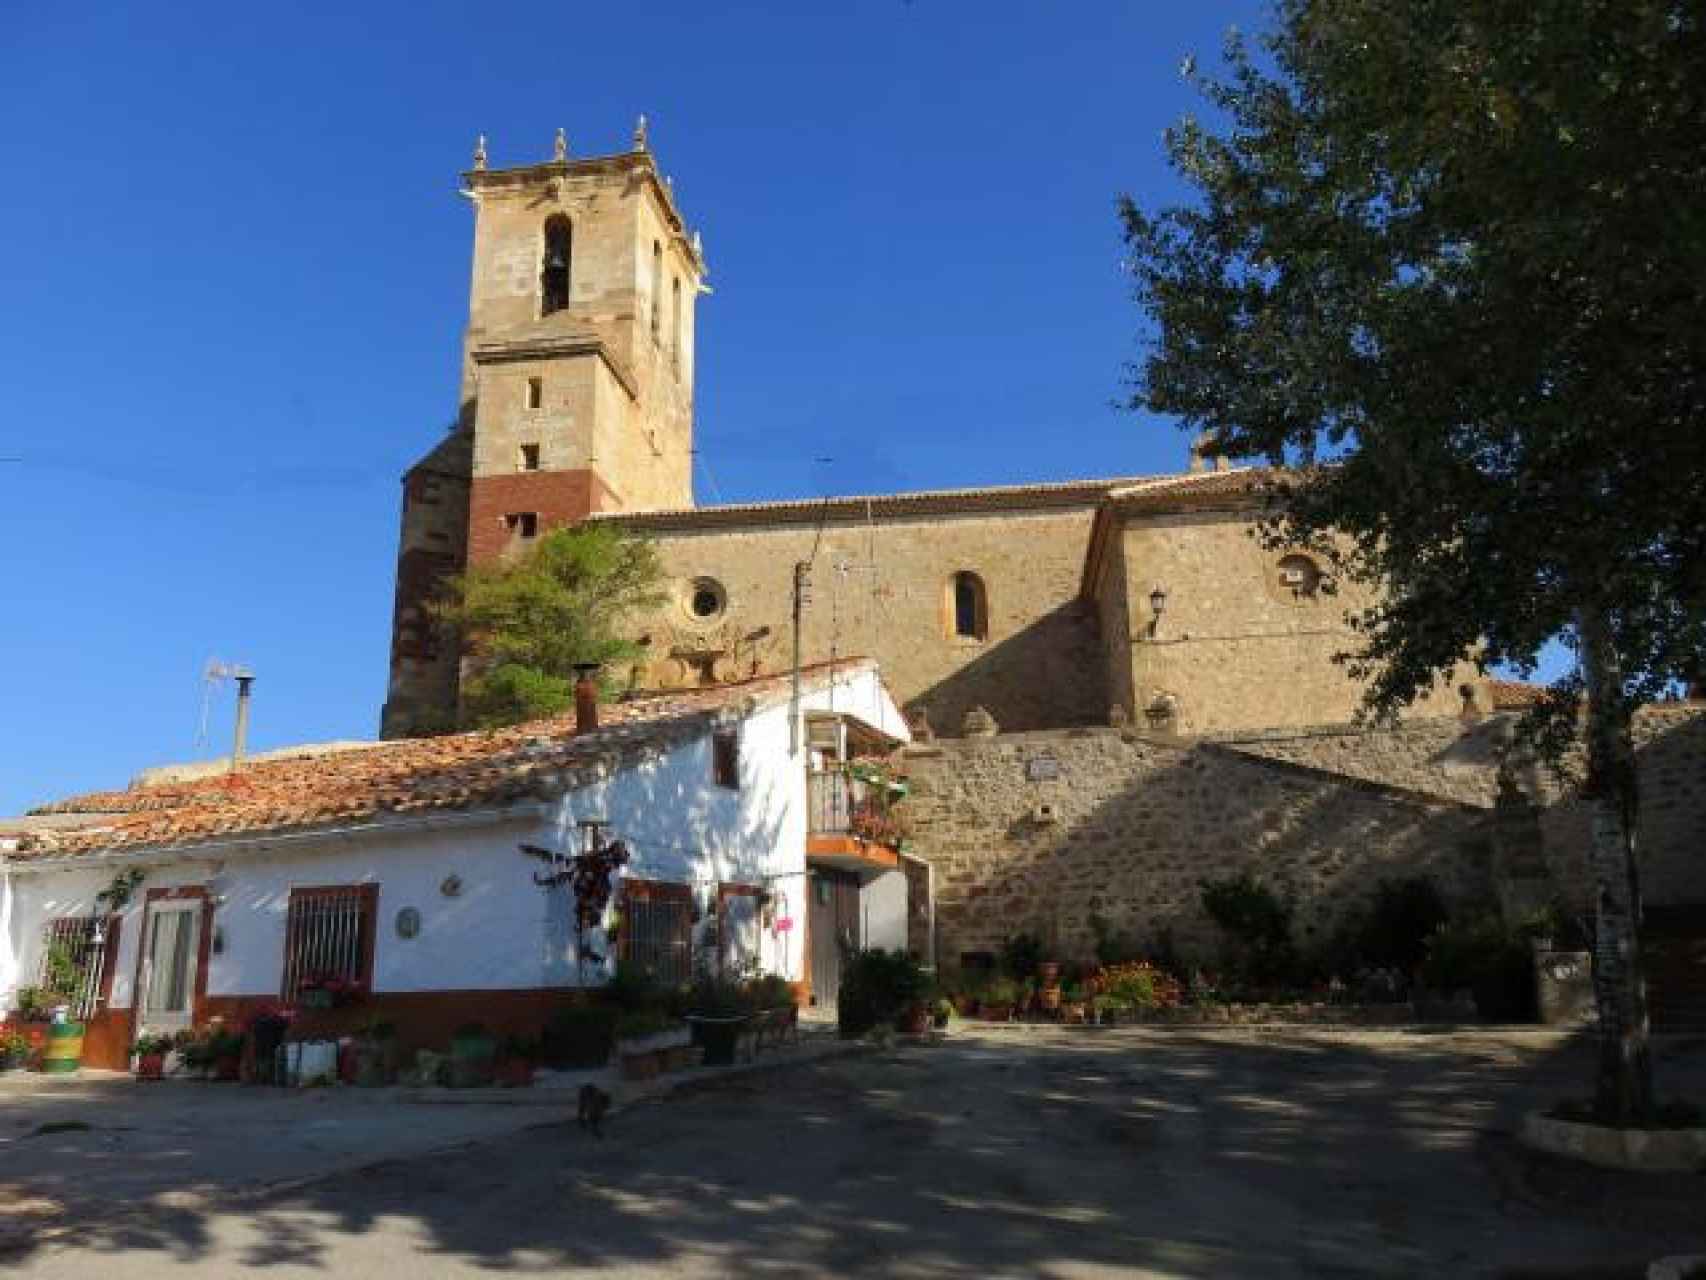 La iglesia de Alustante, en su entorno del barrio del Cerro.